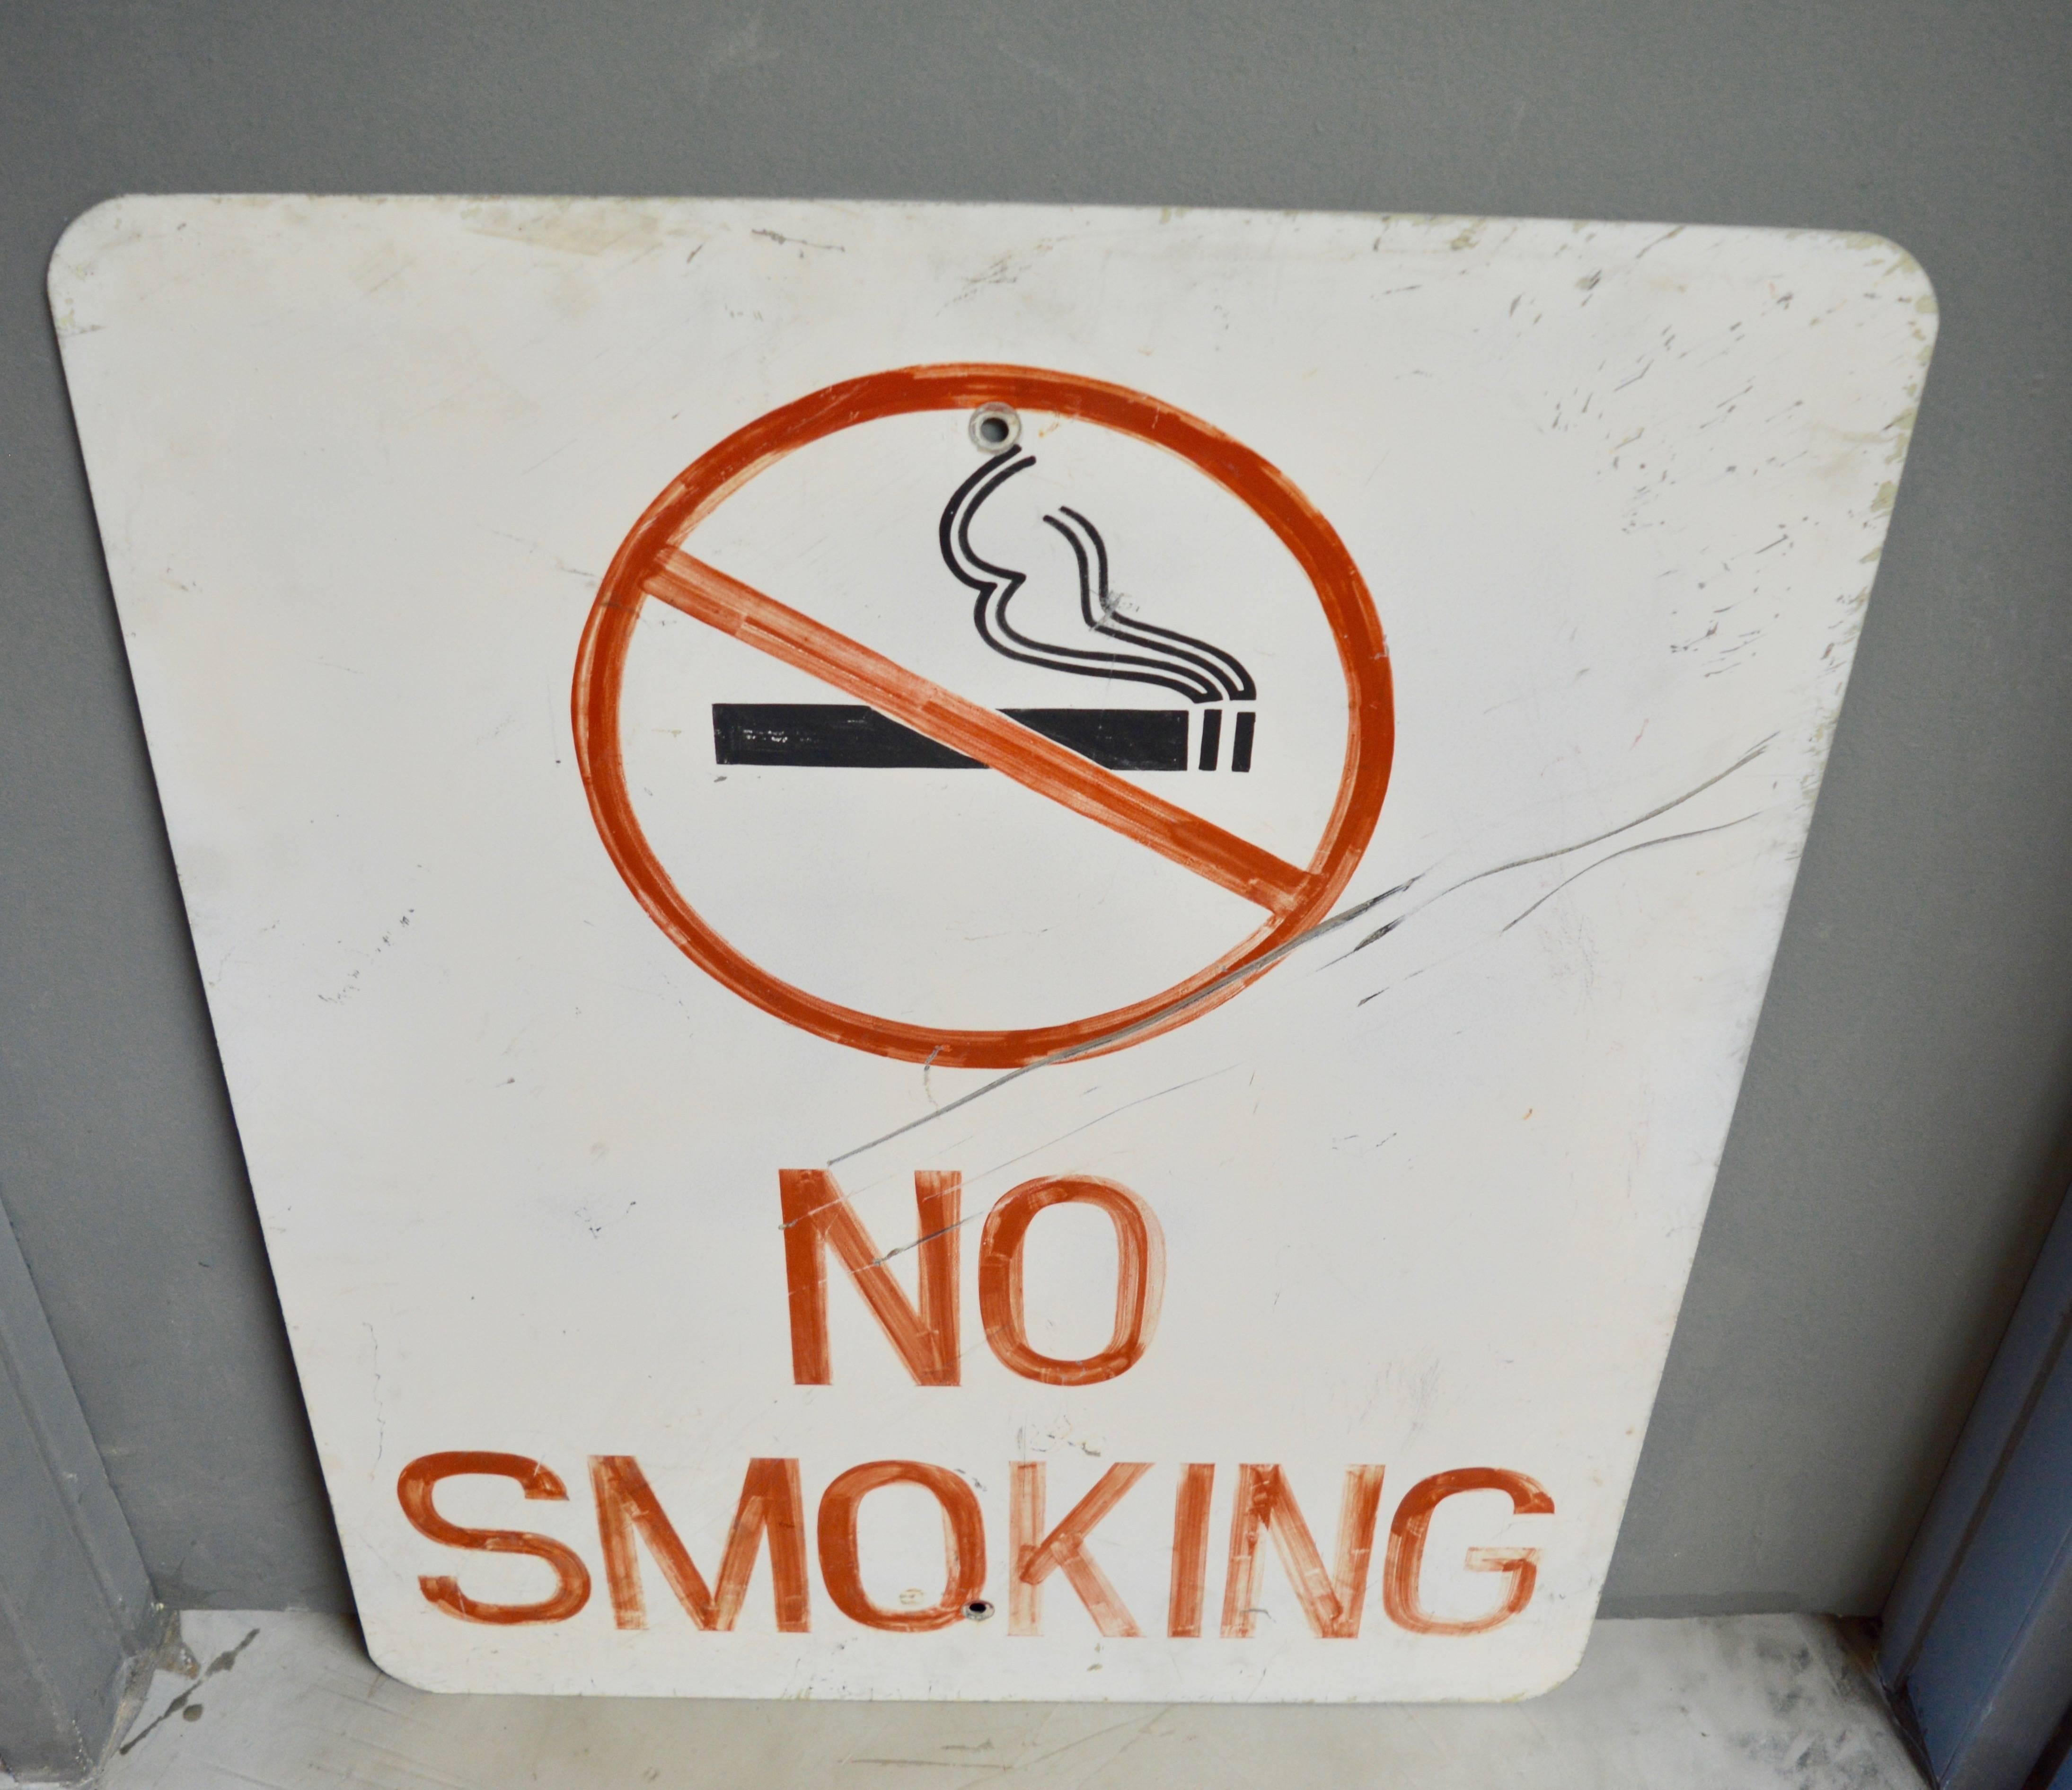 Tolles handgemaltes Vintage-Schild. Rauchverbot und eine durchgestrichene Zigarette, handgemalt auf weißem Stahl. Guter alter Zustand.